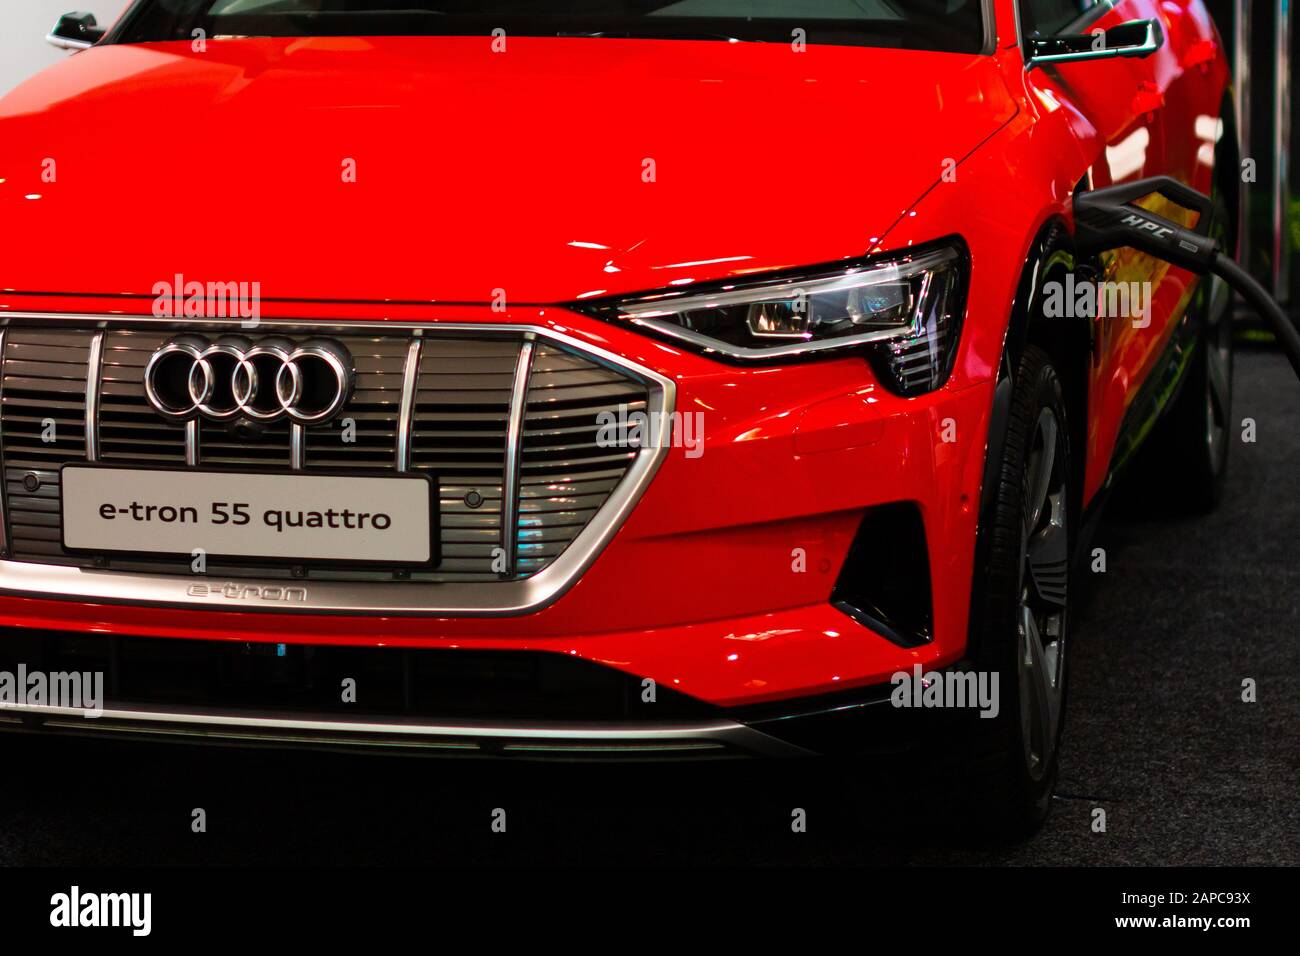 La facturation d'un plug-in Hybrid Audi e-tron Quattro 55 avec le cordon d'alimentation branché, Prague, Tchéquie, novembre 2019. Banque D'Images